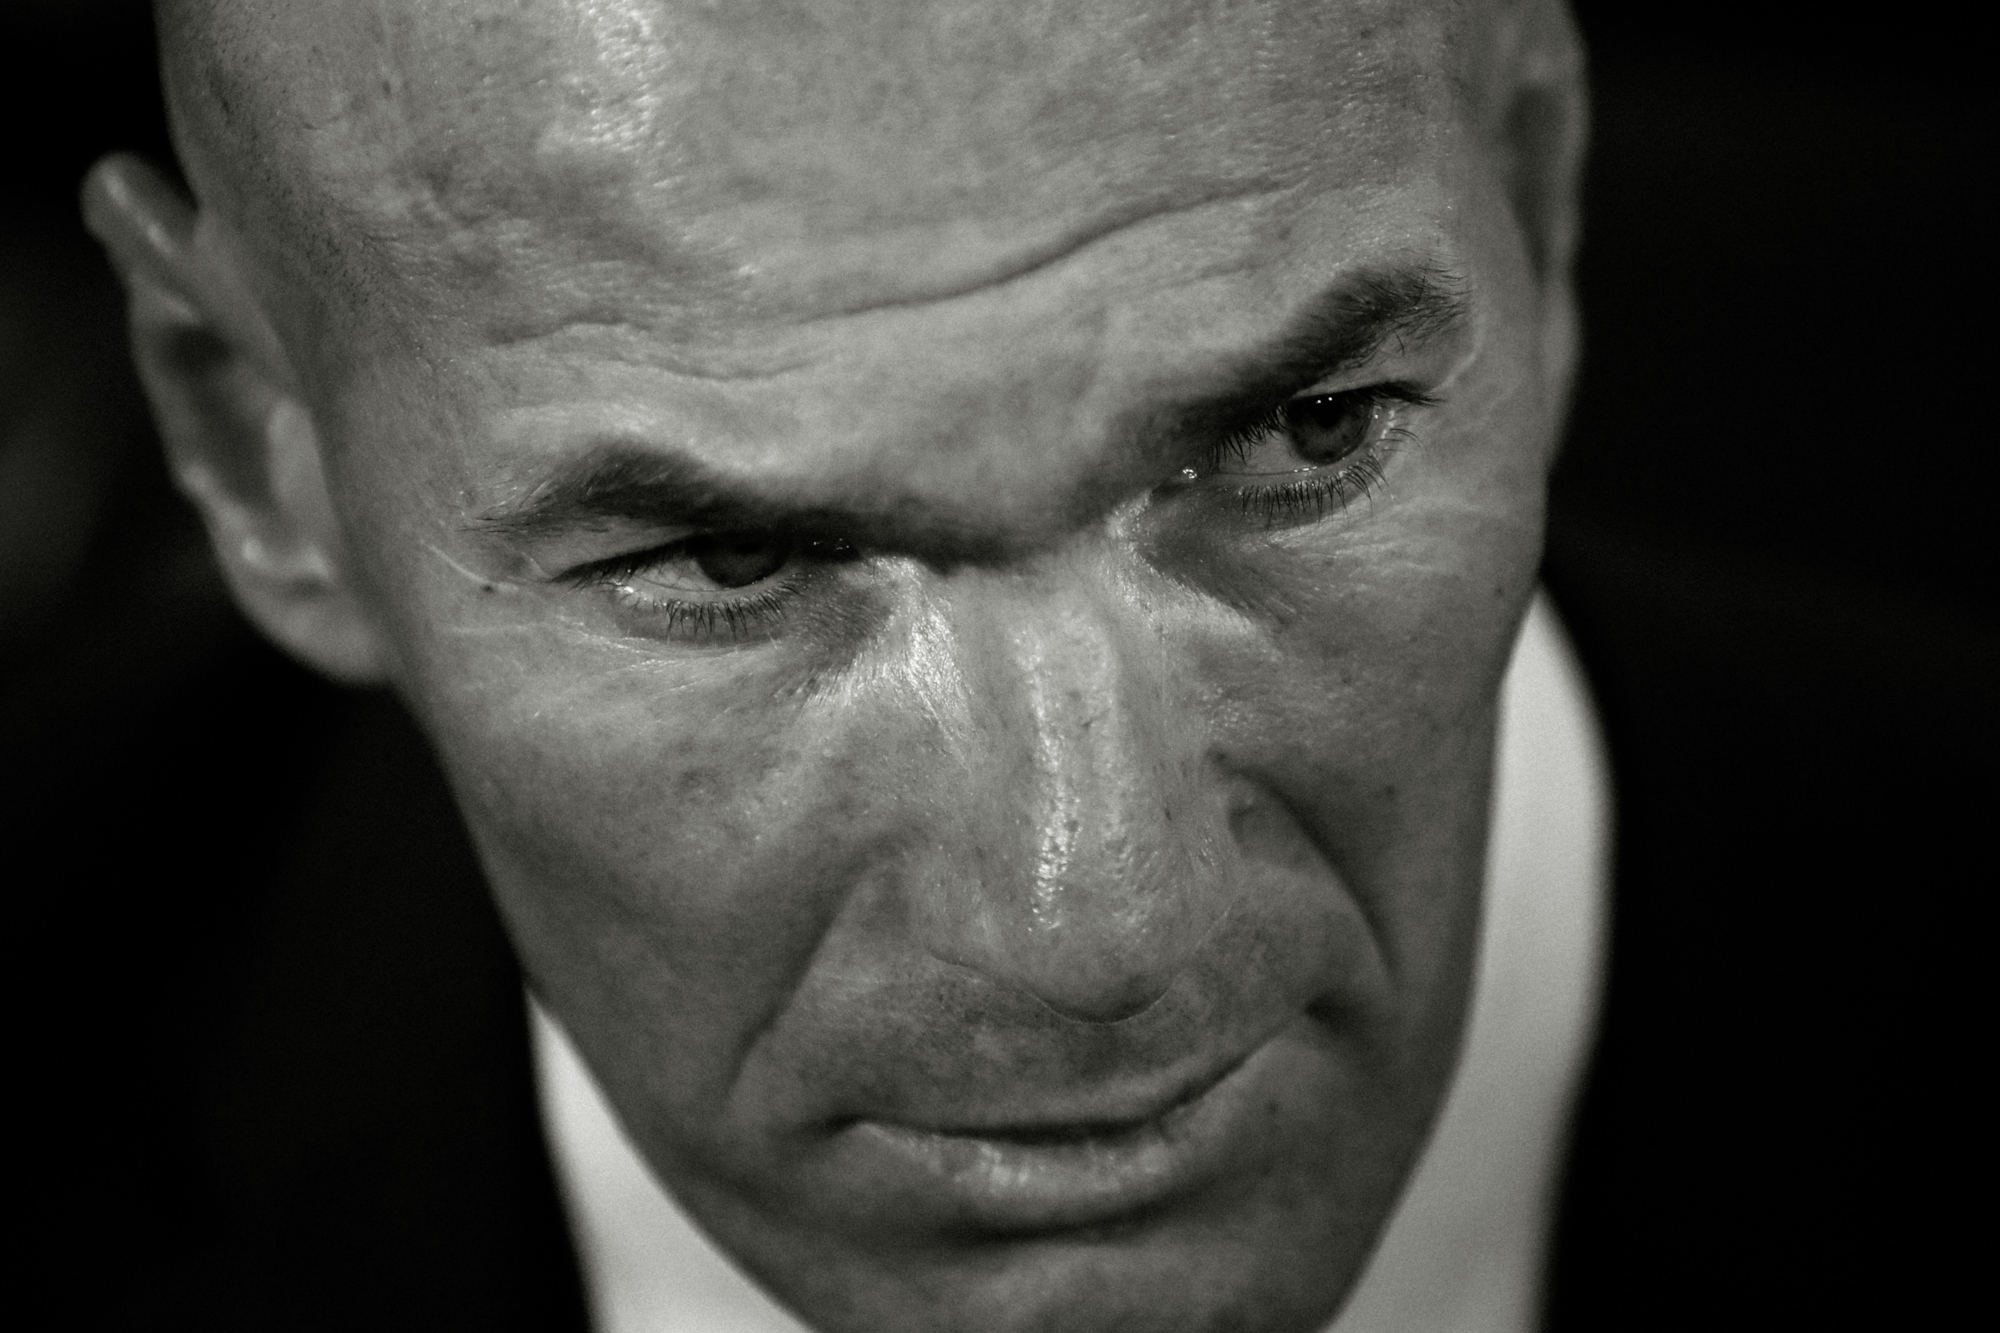 Baixar papel de parede para celular de Esportes, Futebol, Francês, Real Madrid C F, Zinedine Zidane gratuito.